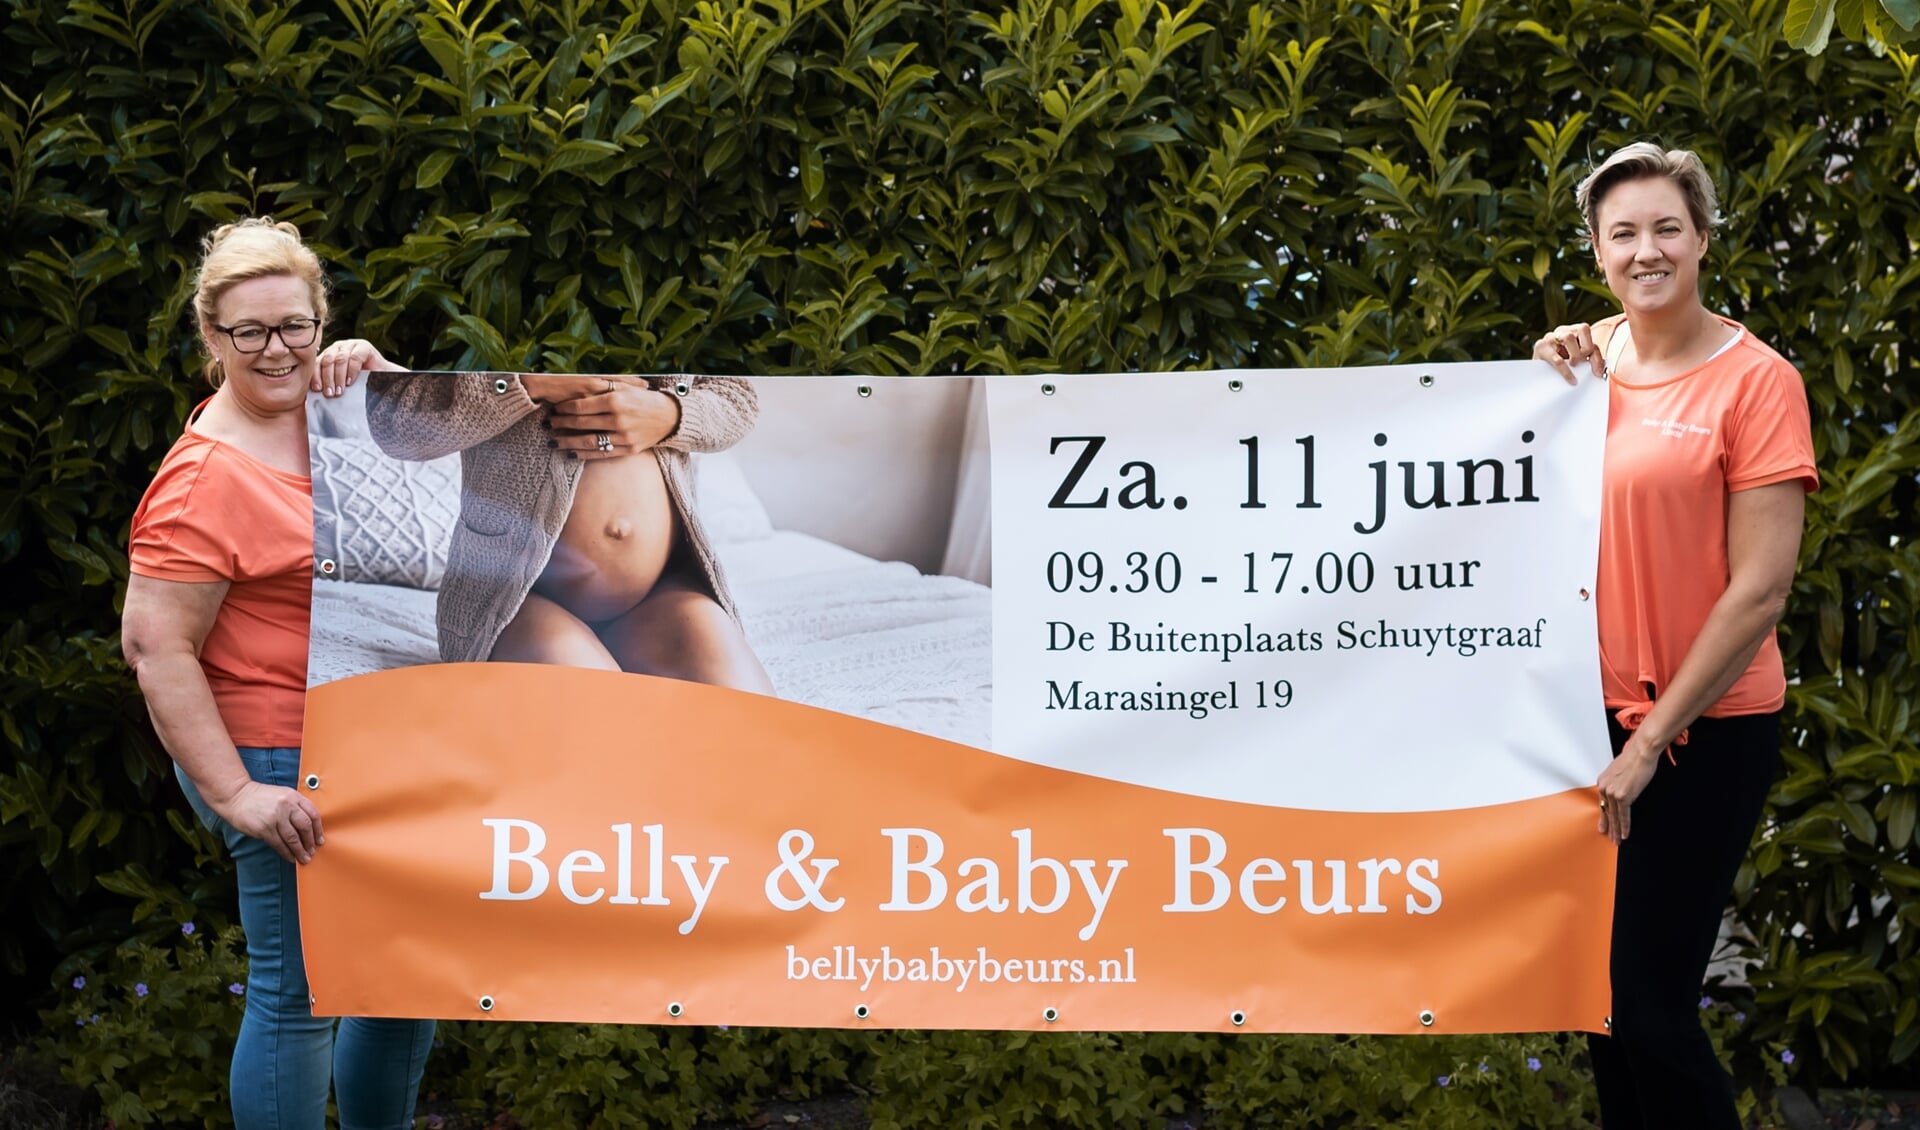 Organisatoren Belly & Baby Beurs